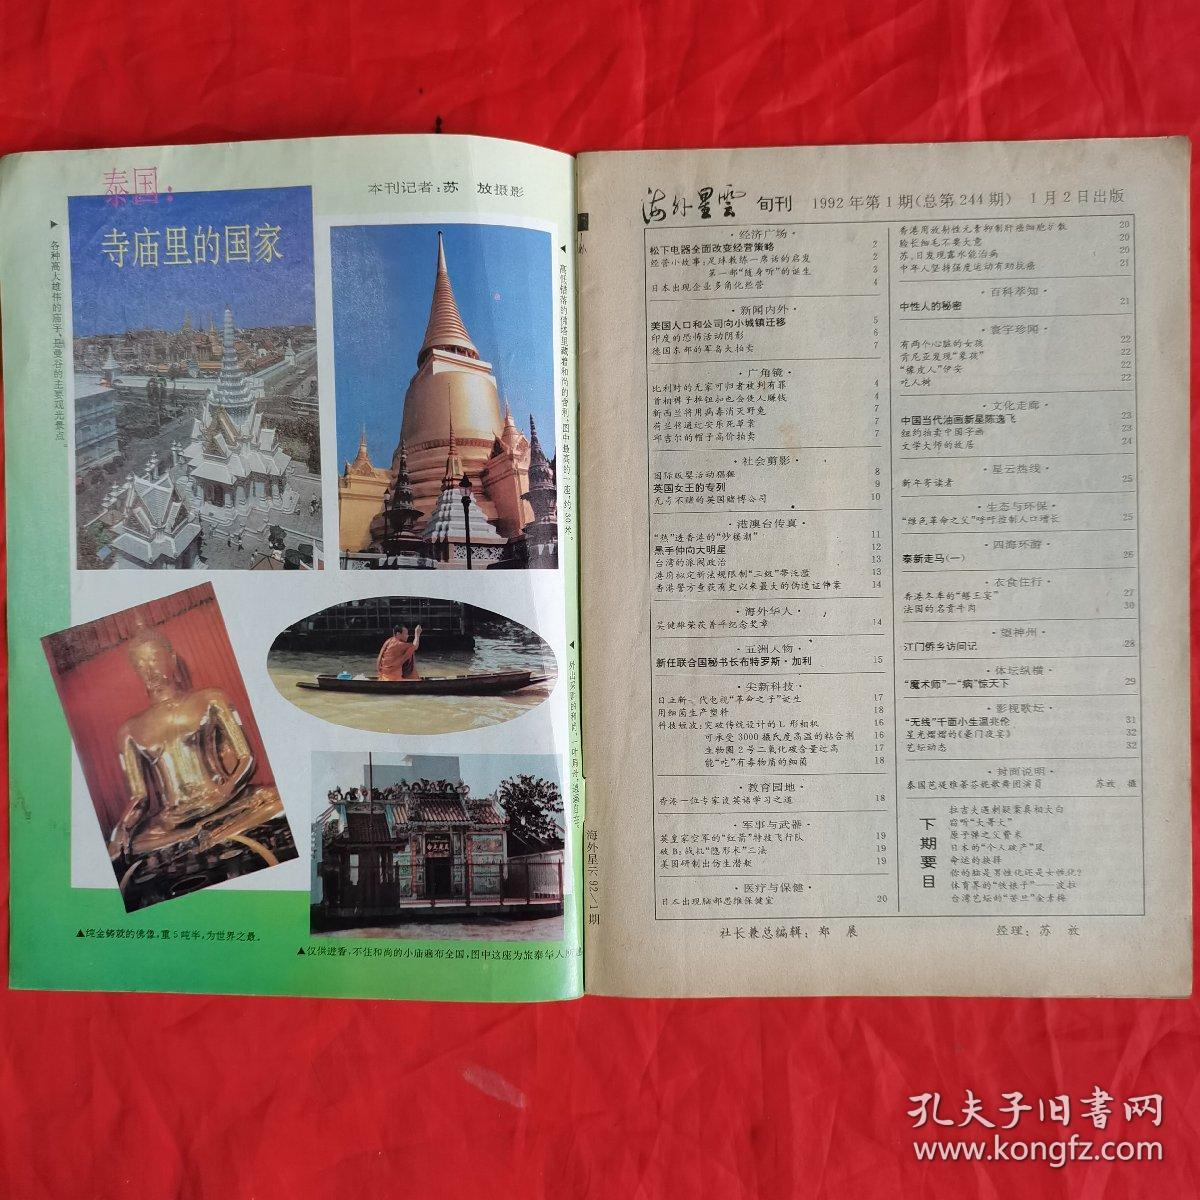 海外星云（旬刊），（1992年全年36期•现有31期•总第244～279期）。（仅缺第5、6、7、9、19期）。私藏書籍，共计31册/合售（重量约1.5kg）。